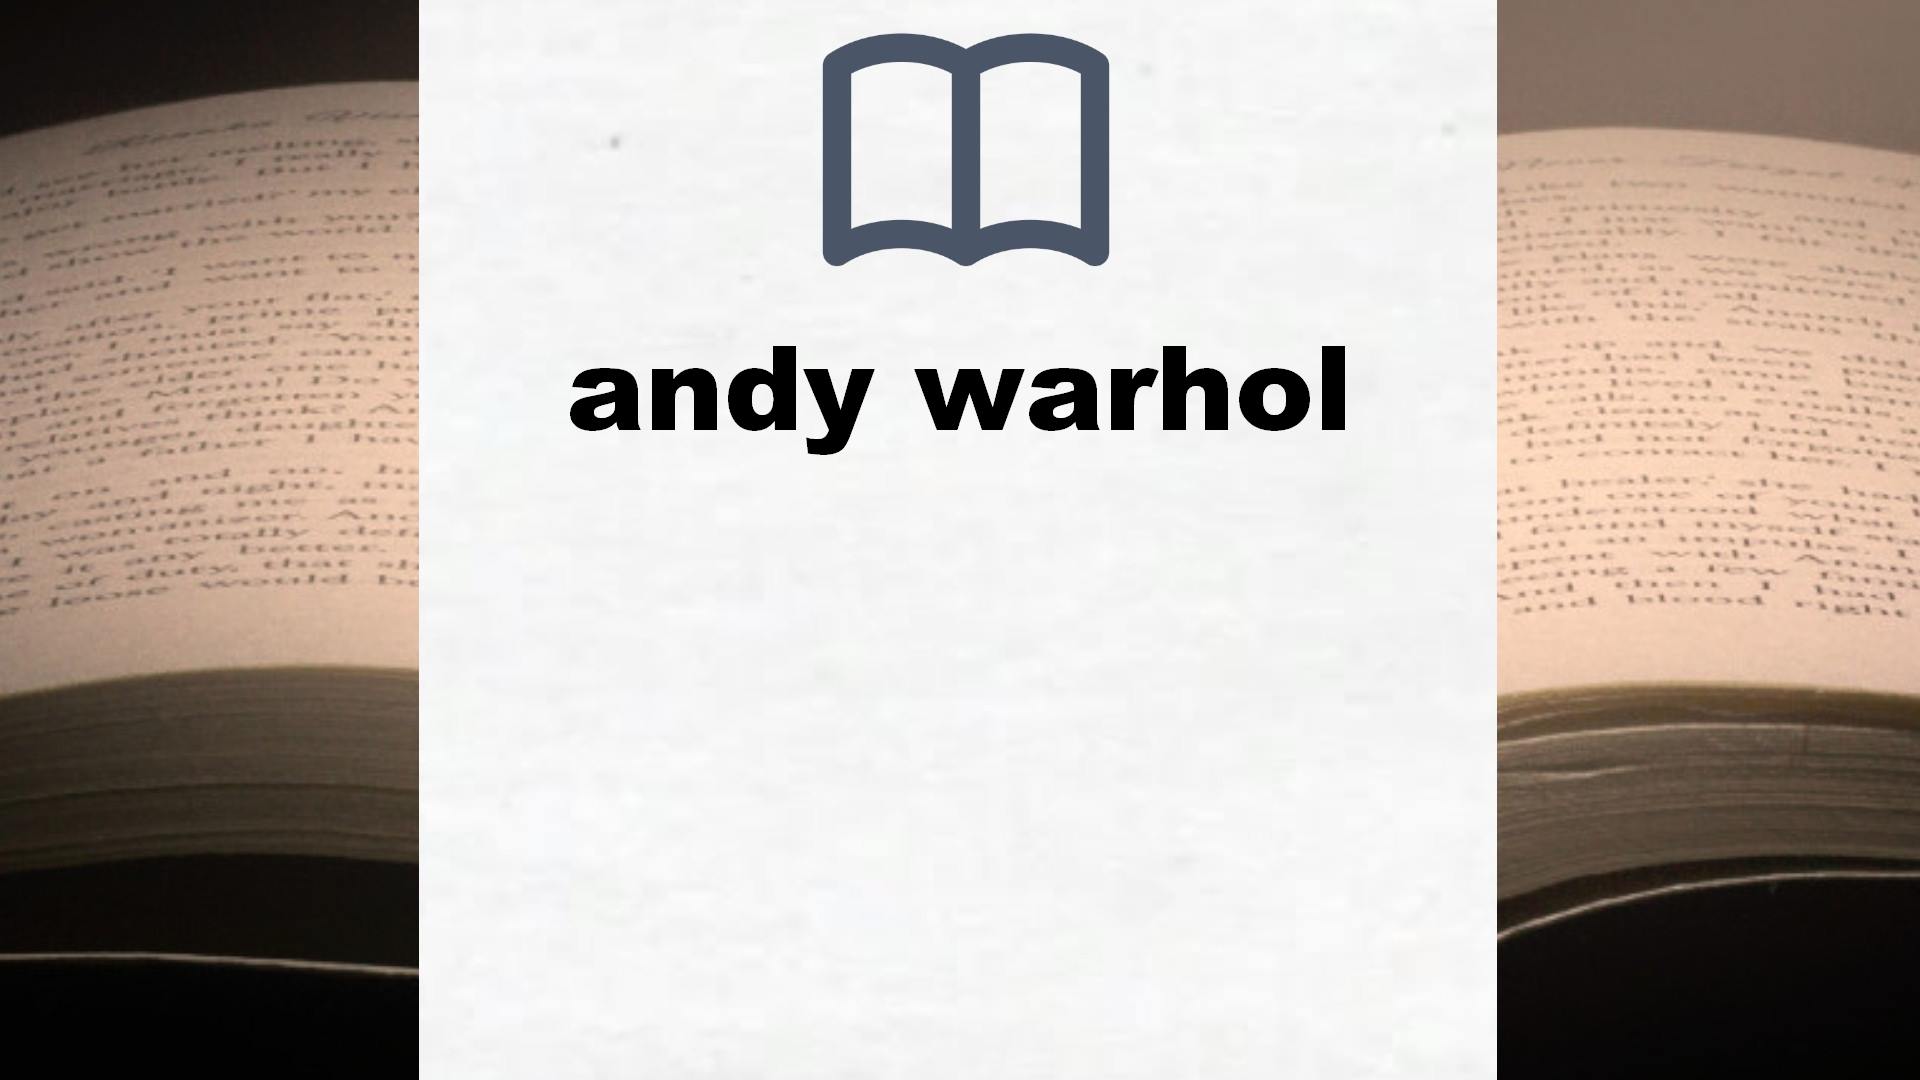 Libros sobre andy warhol